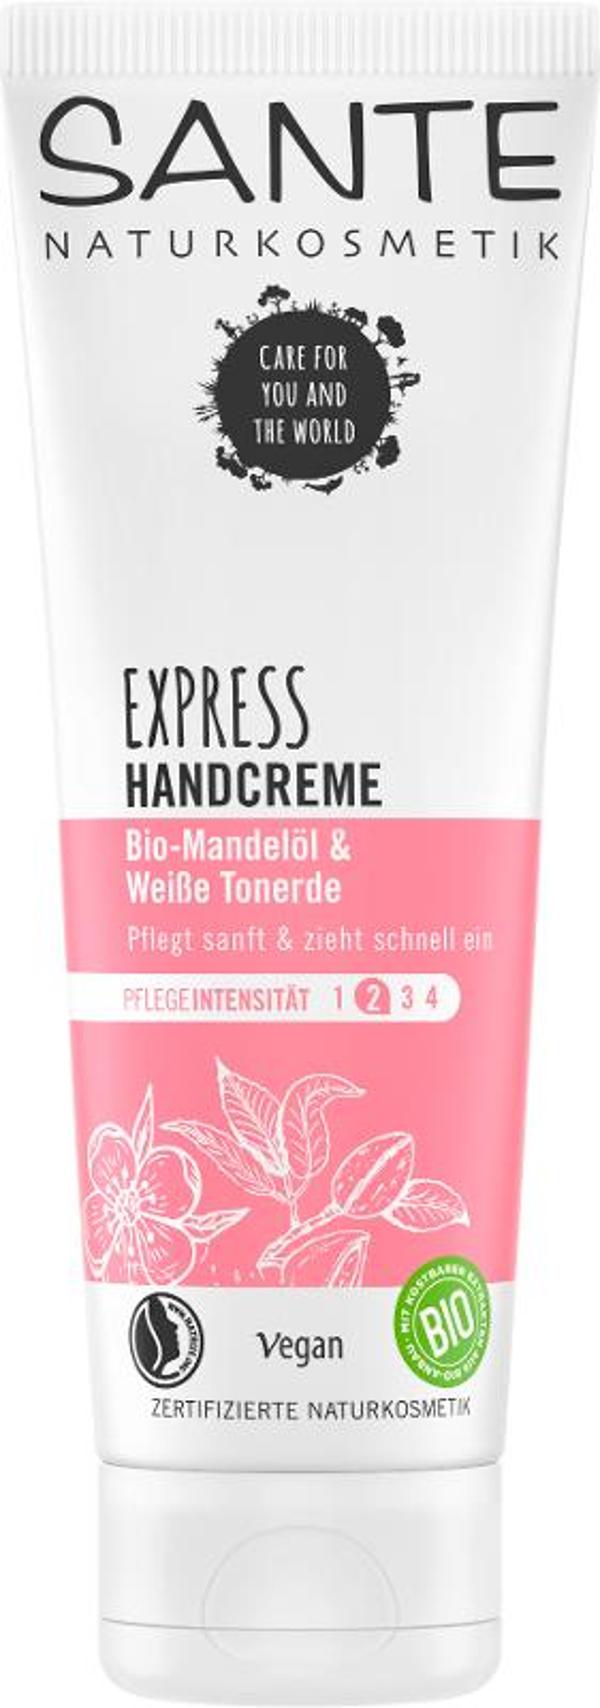 Produktfoto zu Express Handcreme Tonerde & Mandel 75ml